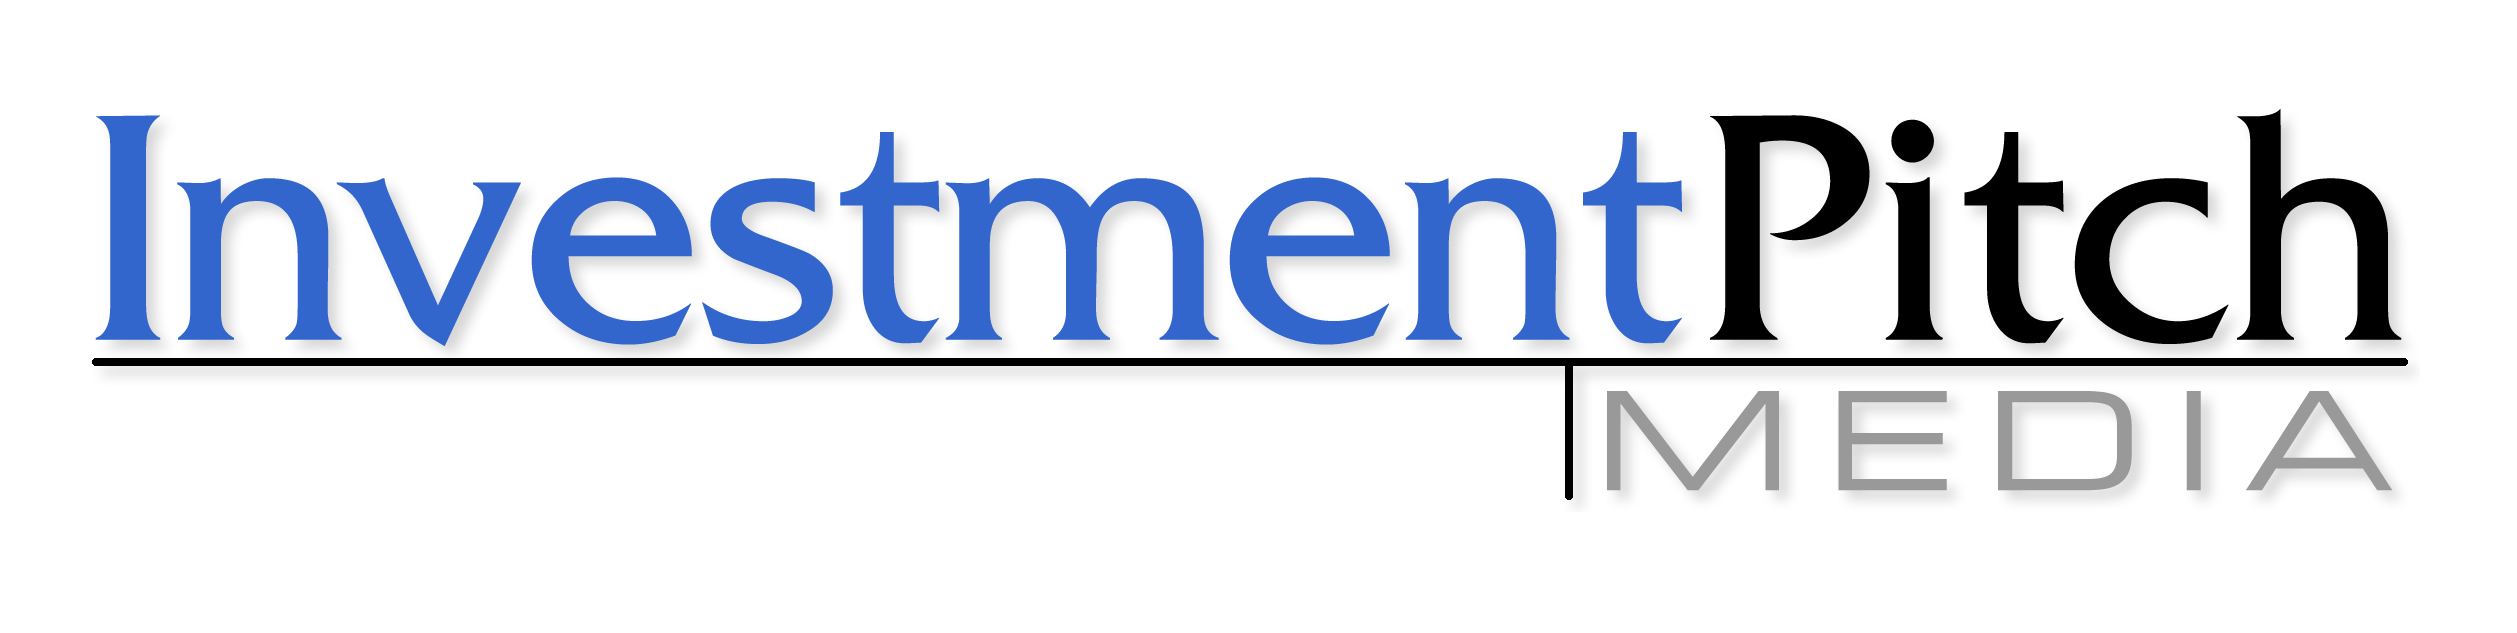 Investment Pitch media Logo 300 DPI.jpg